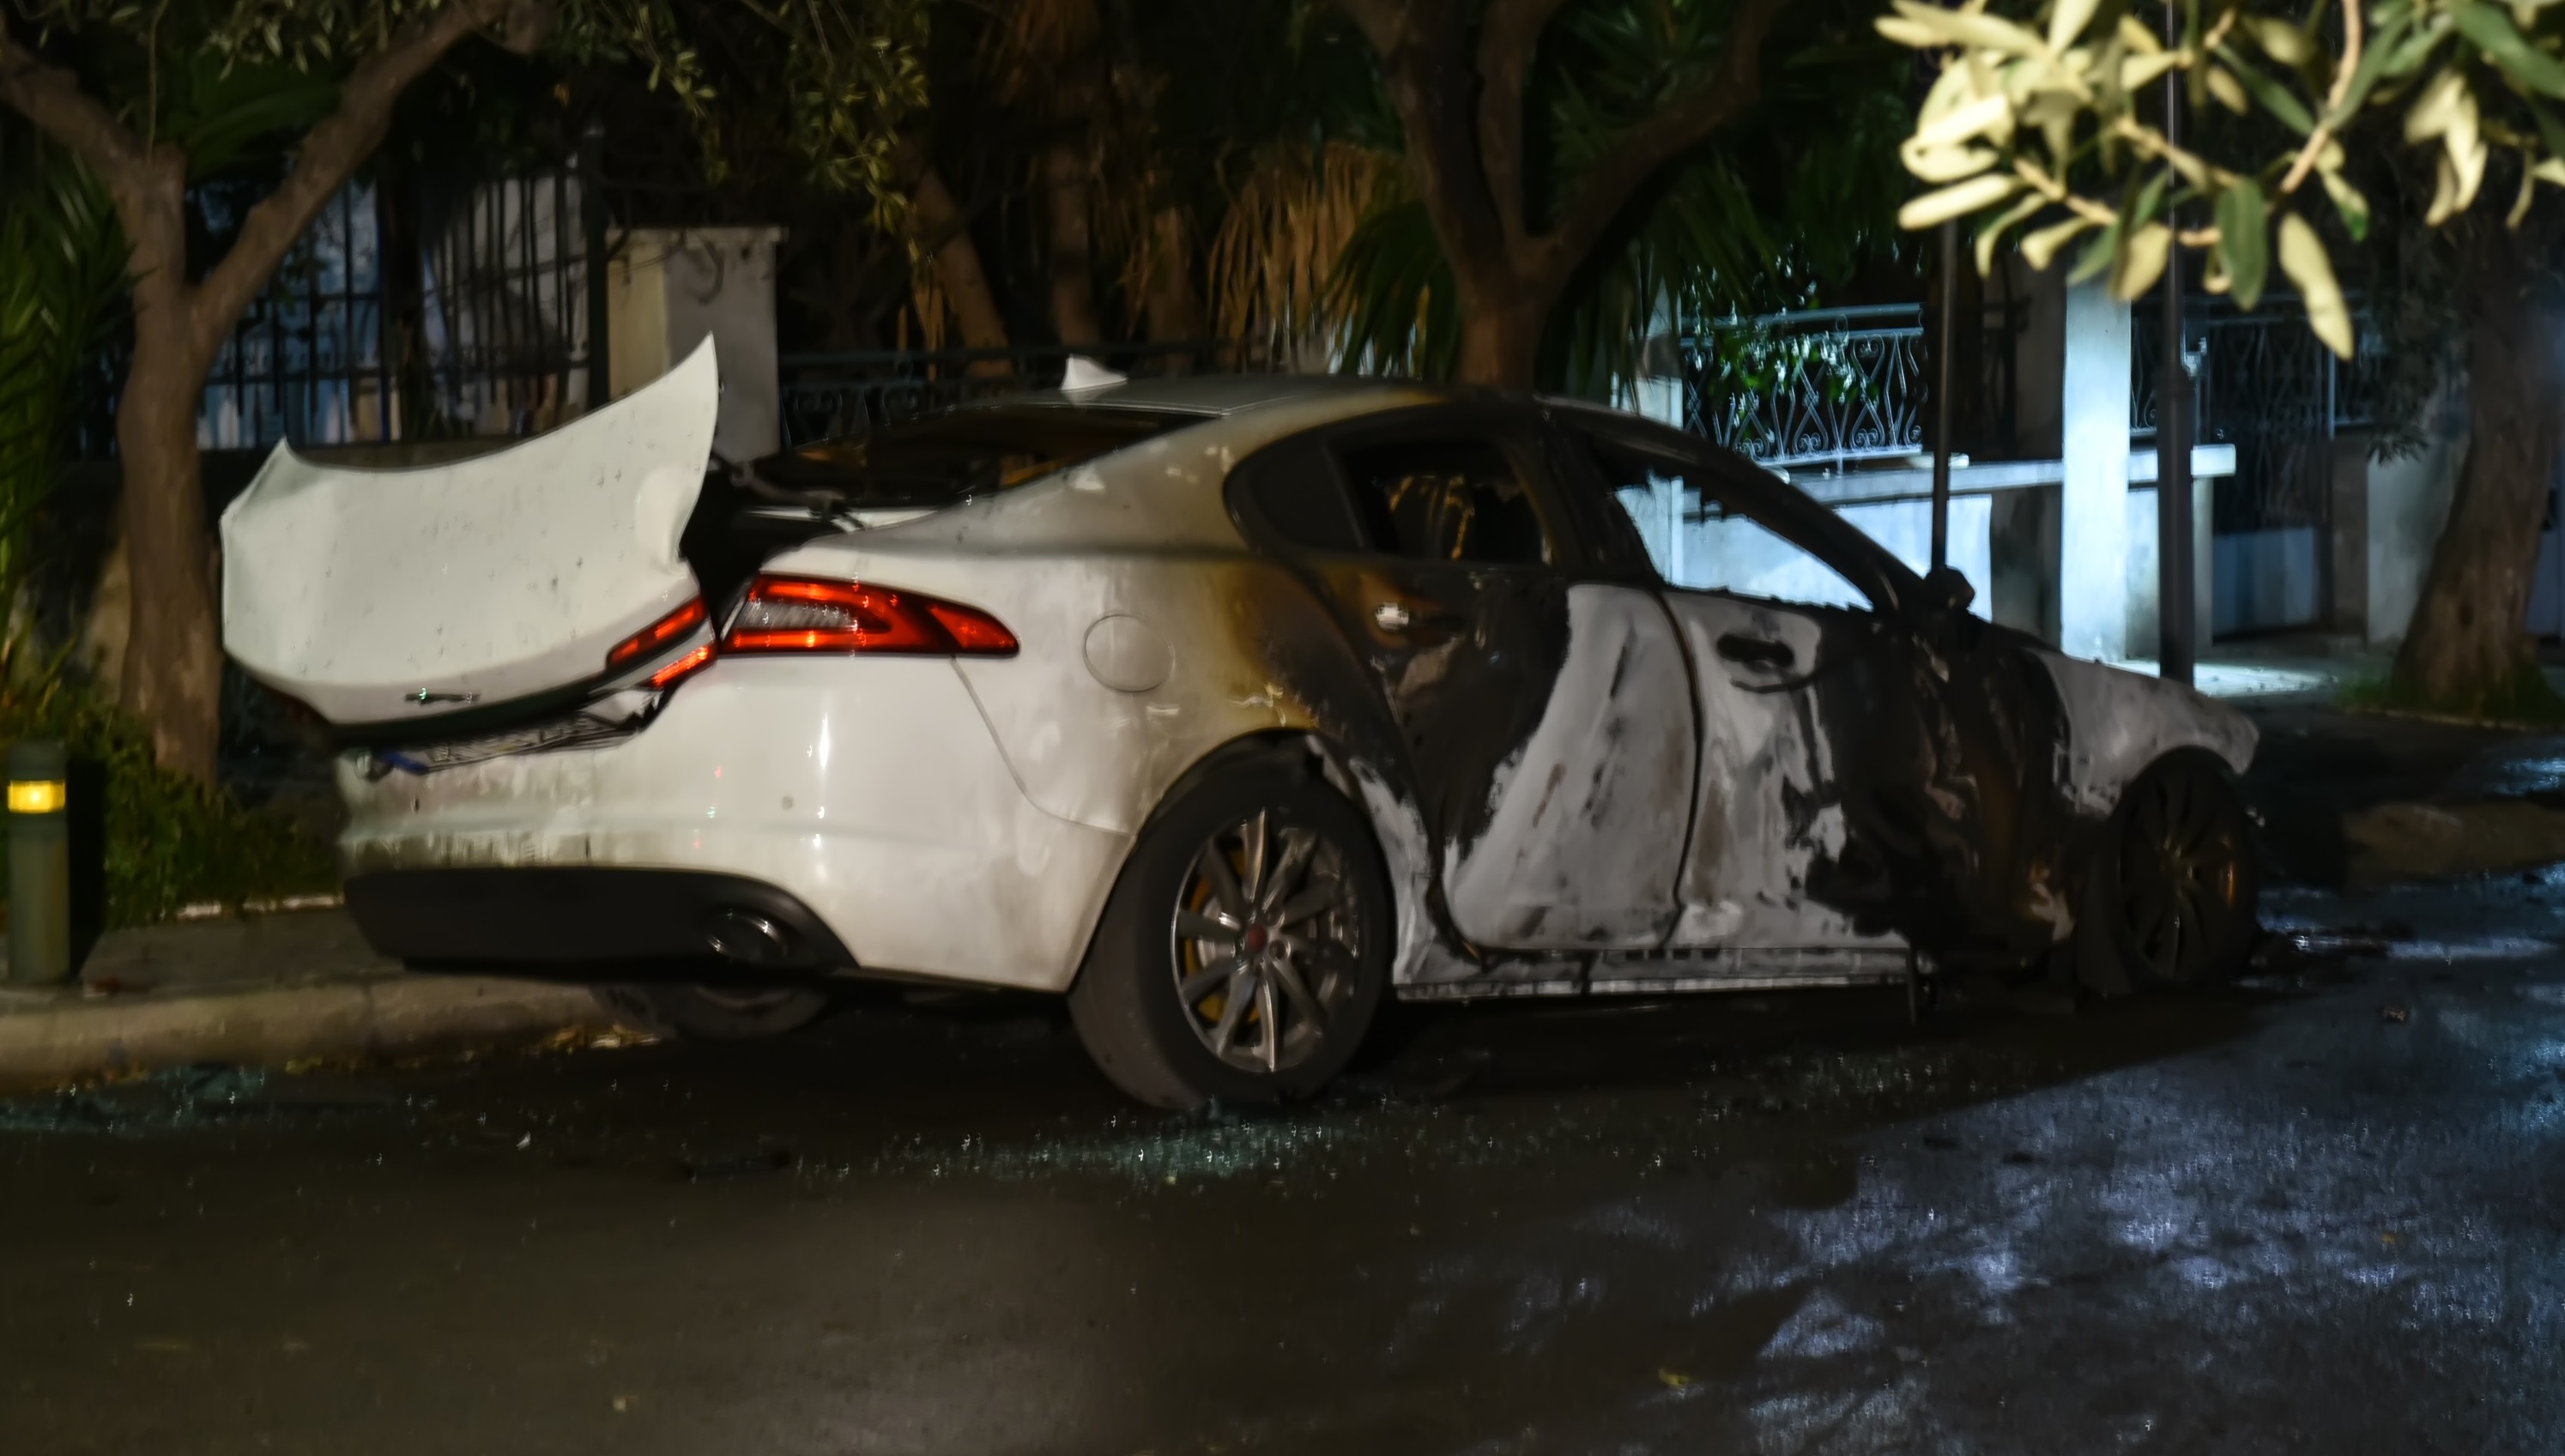 Έκρηξη βόμβας σε αυτοκίνητο εκδότη εφημερίδας στην Αγία Βαρβάρα